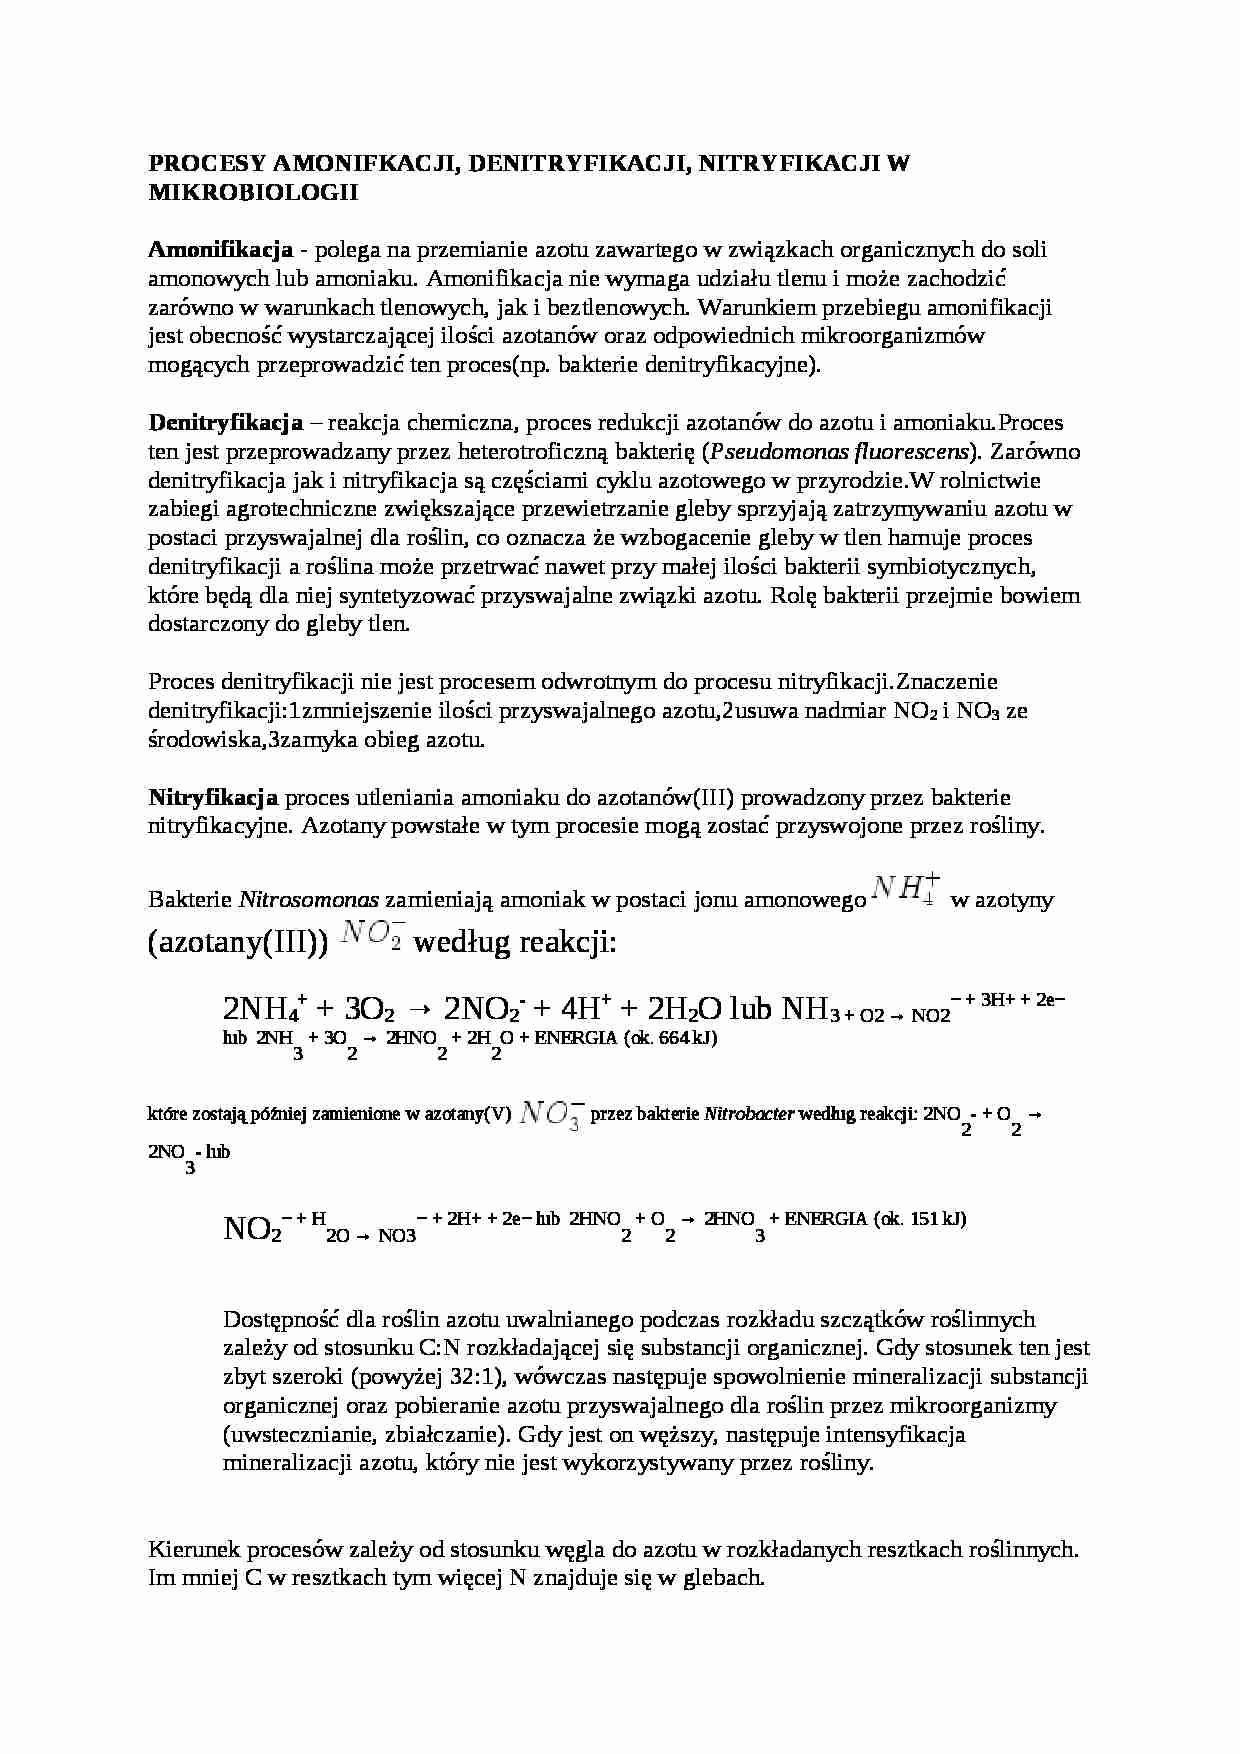 Amonifikacja, denitryfikacja, nitryfikacja - wykład - strona 1